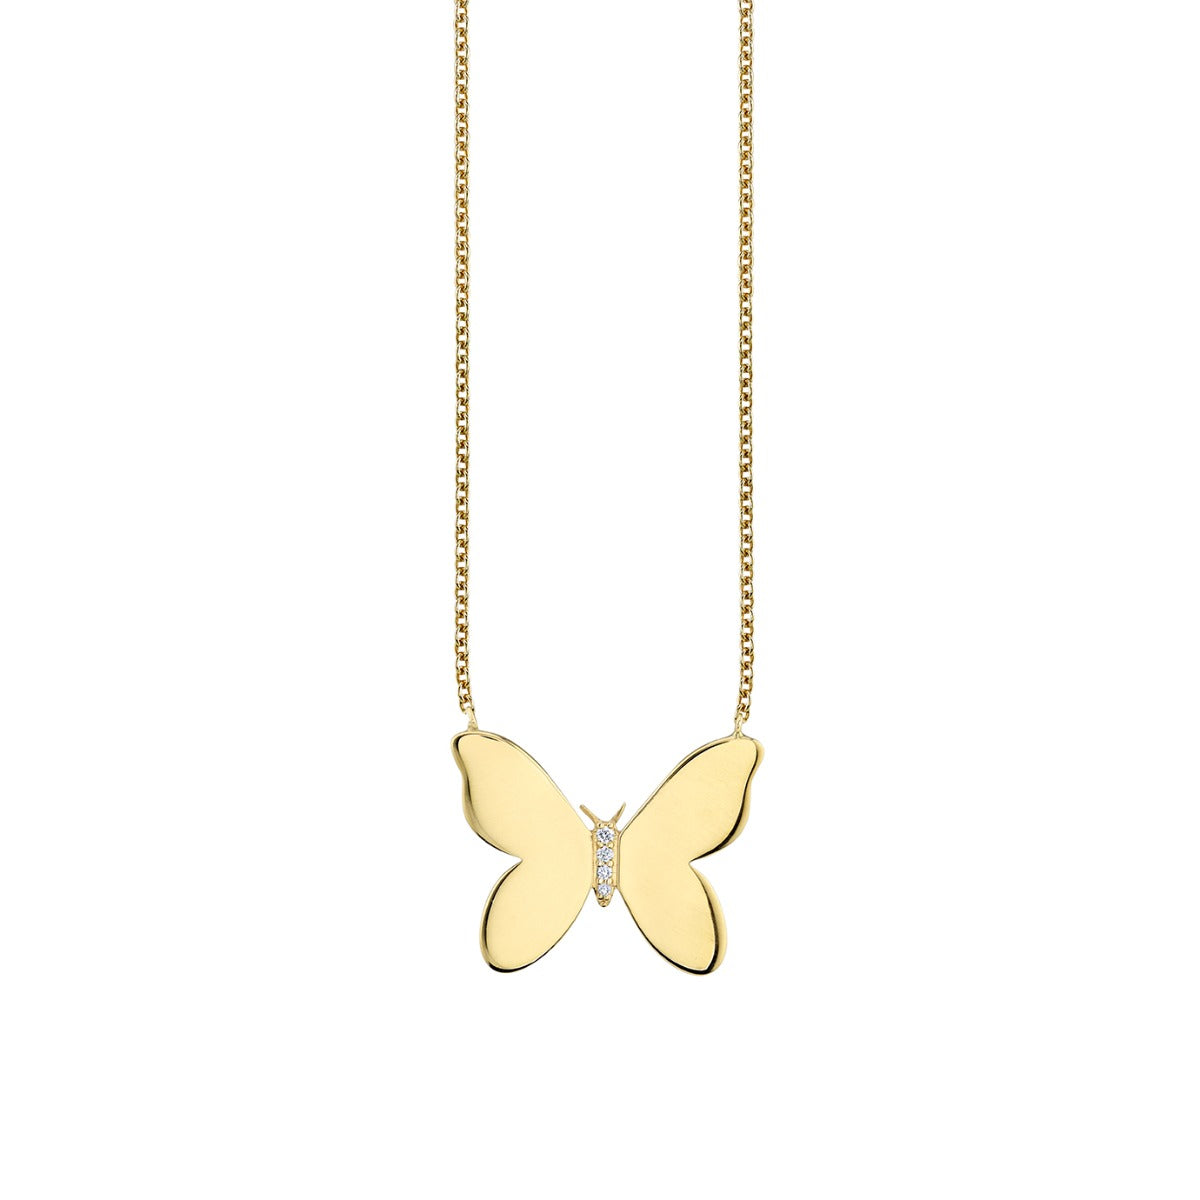 Gold & Diamond Butterfly Necklace – Sydney Evan